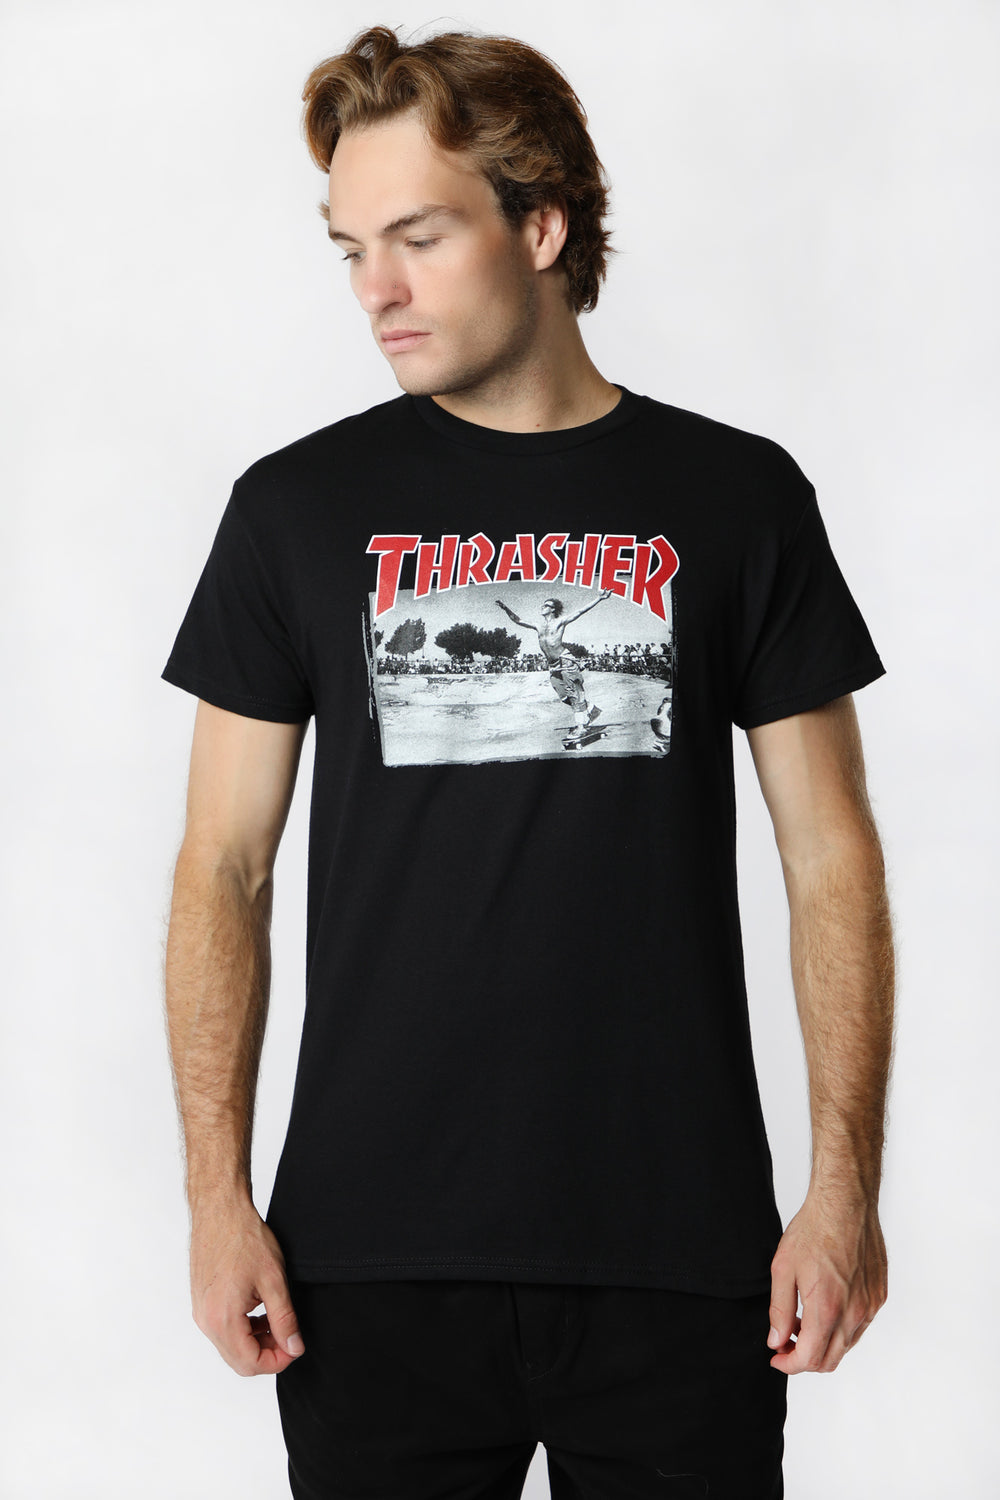 T-Shirt Jake Dish Thrasher T-Shirt Jake Dish Thrasher